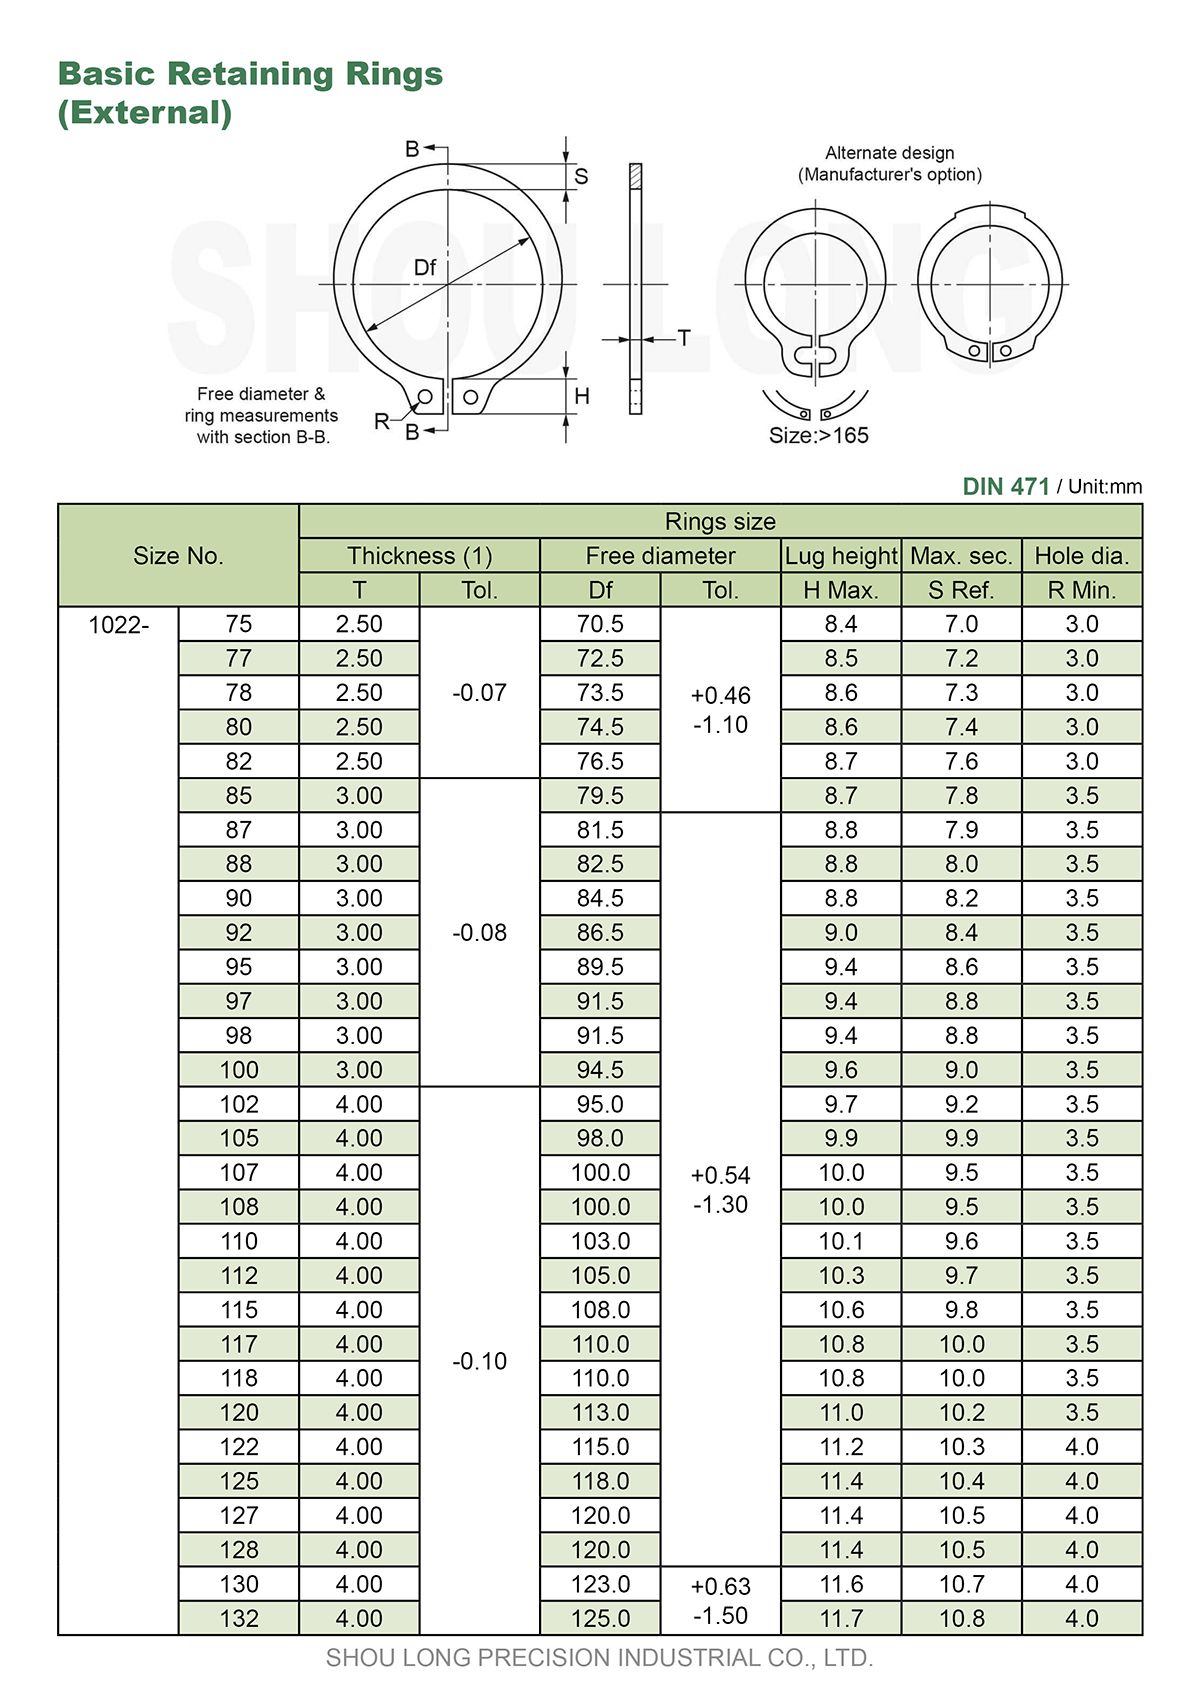 ข้อมูลของวงแหวนรัดพื้นฐานเมตริกสำหรับแกน DIN471-3